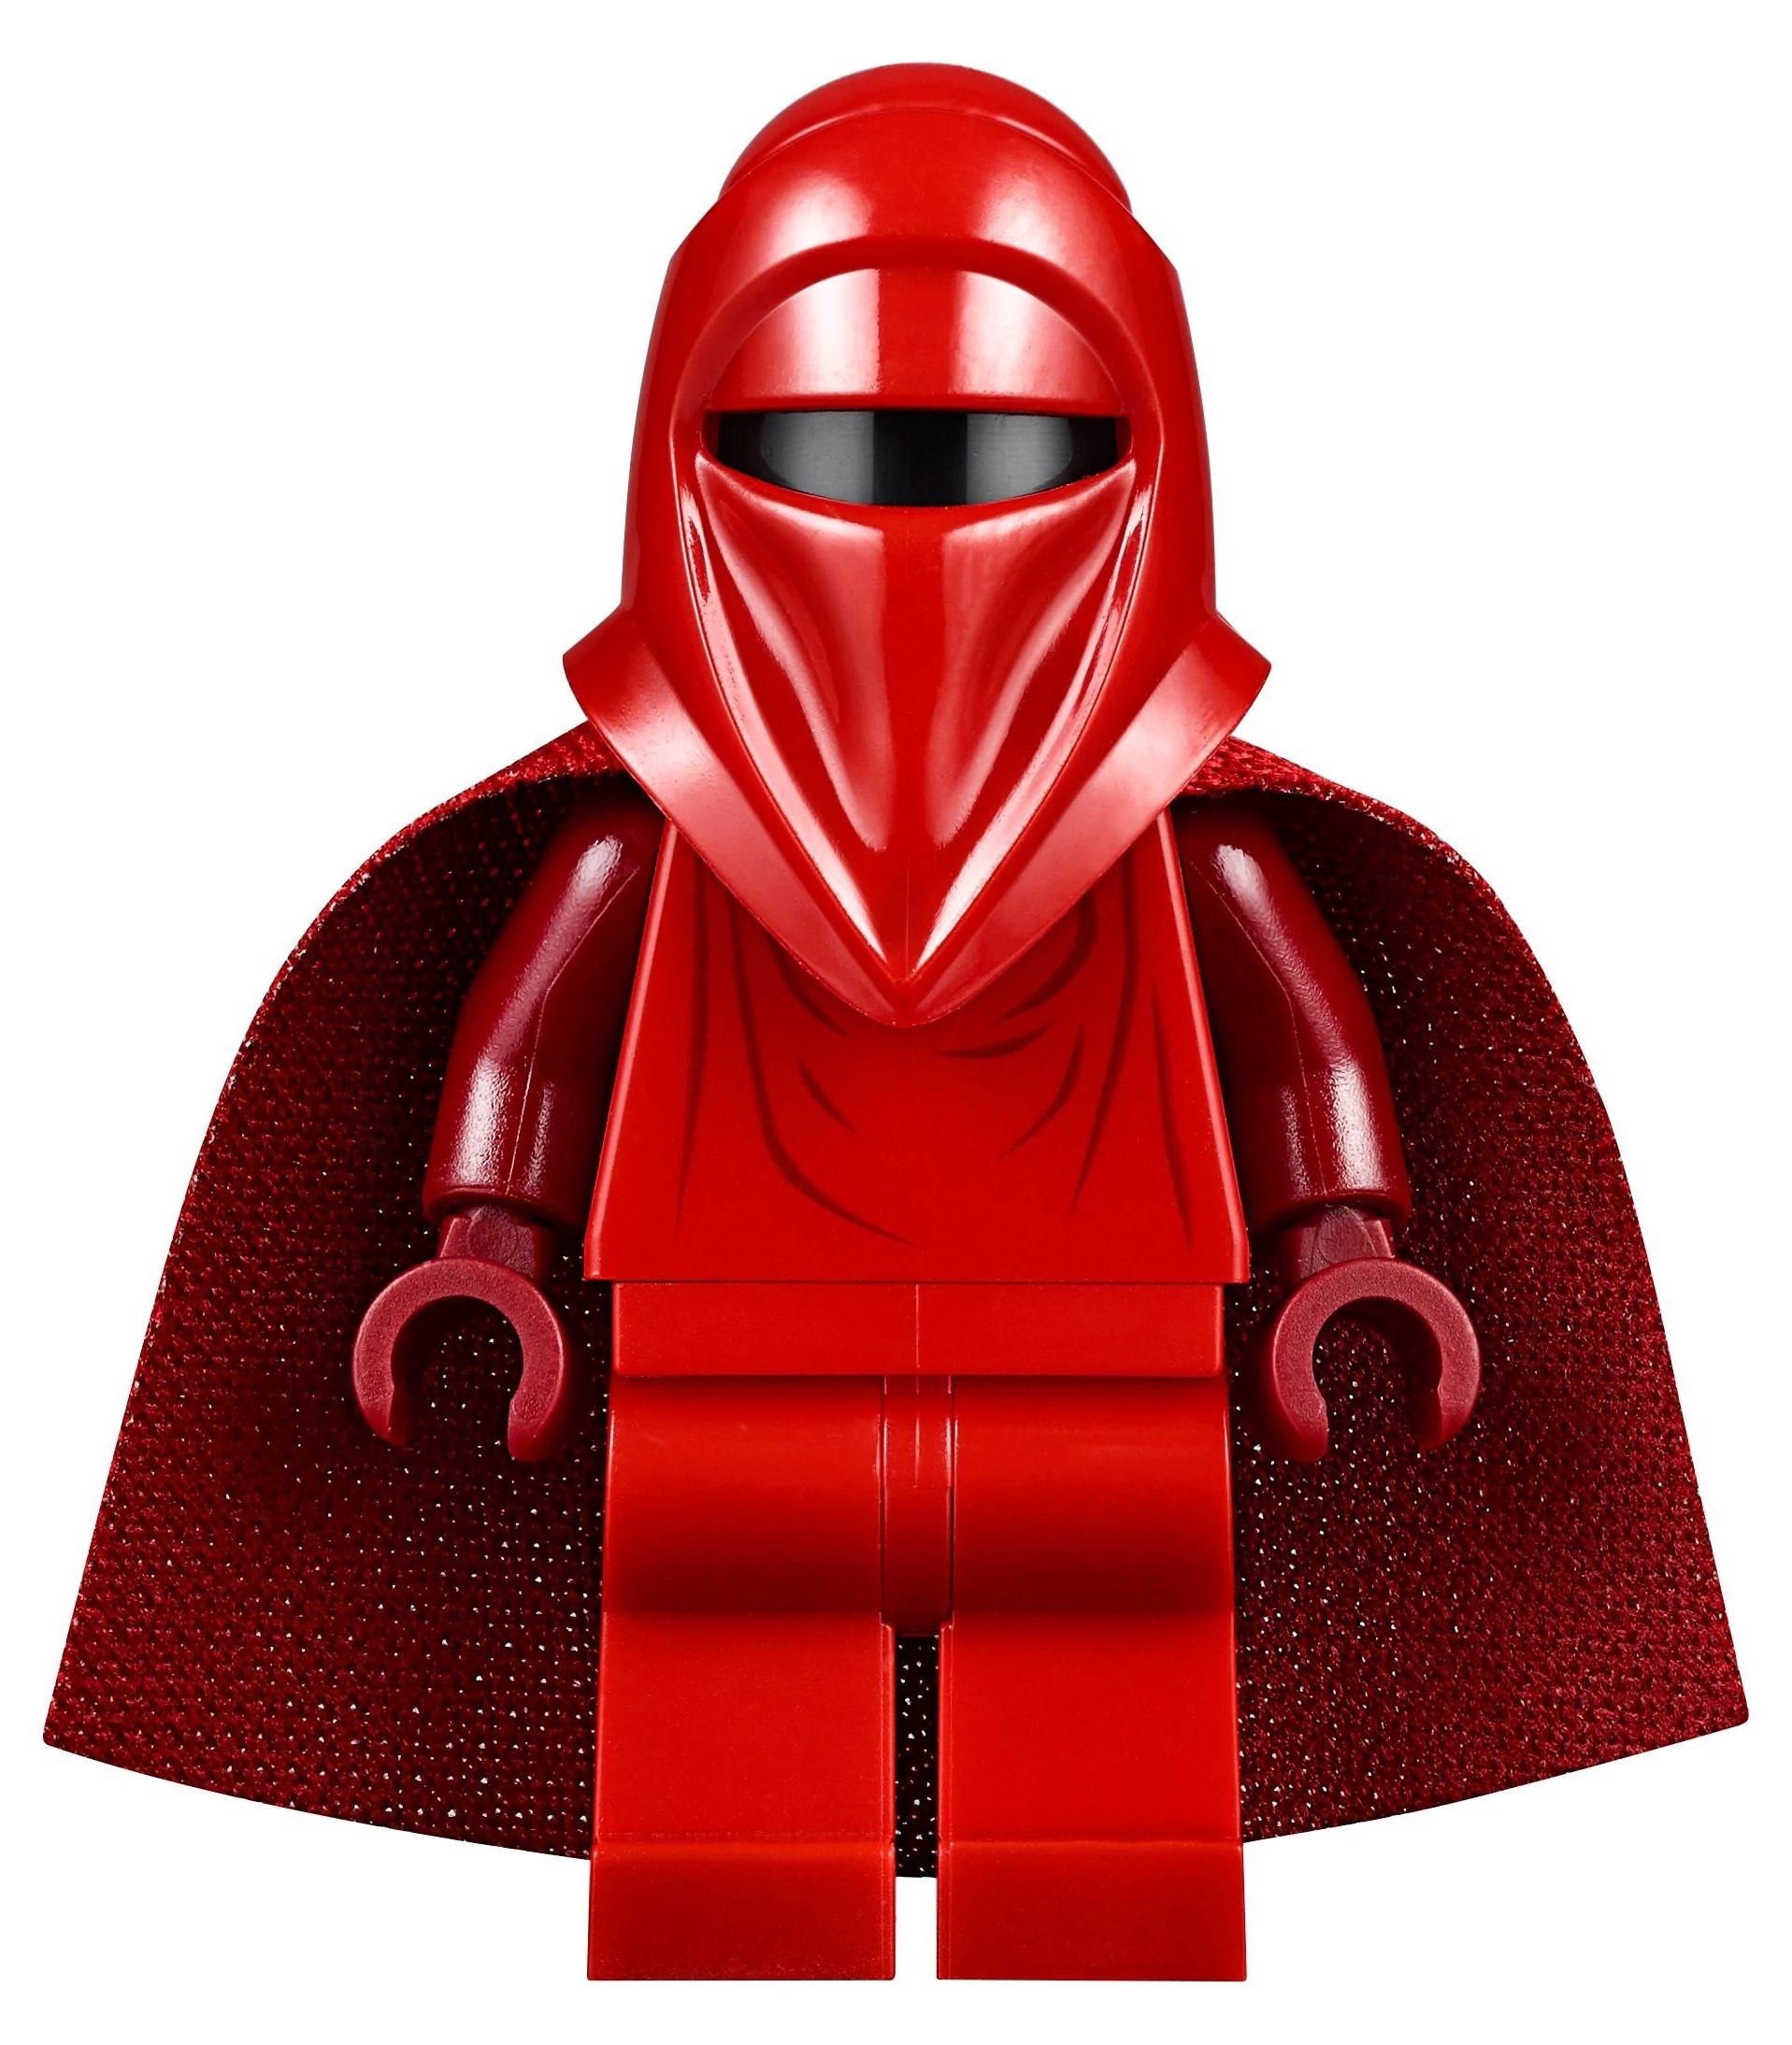 Lego Star Wars Figur sw040 Royal Guard 6211 7166 7264 10188 